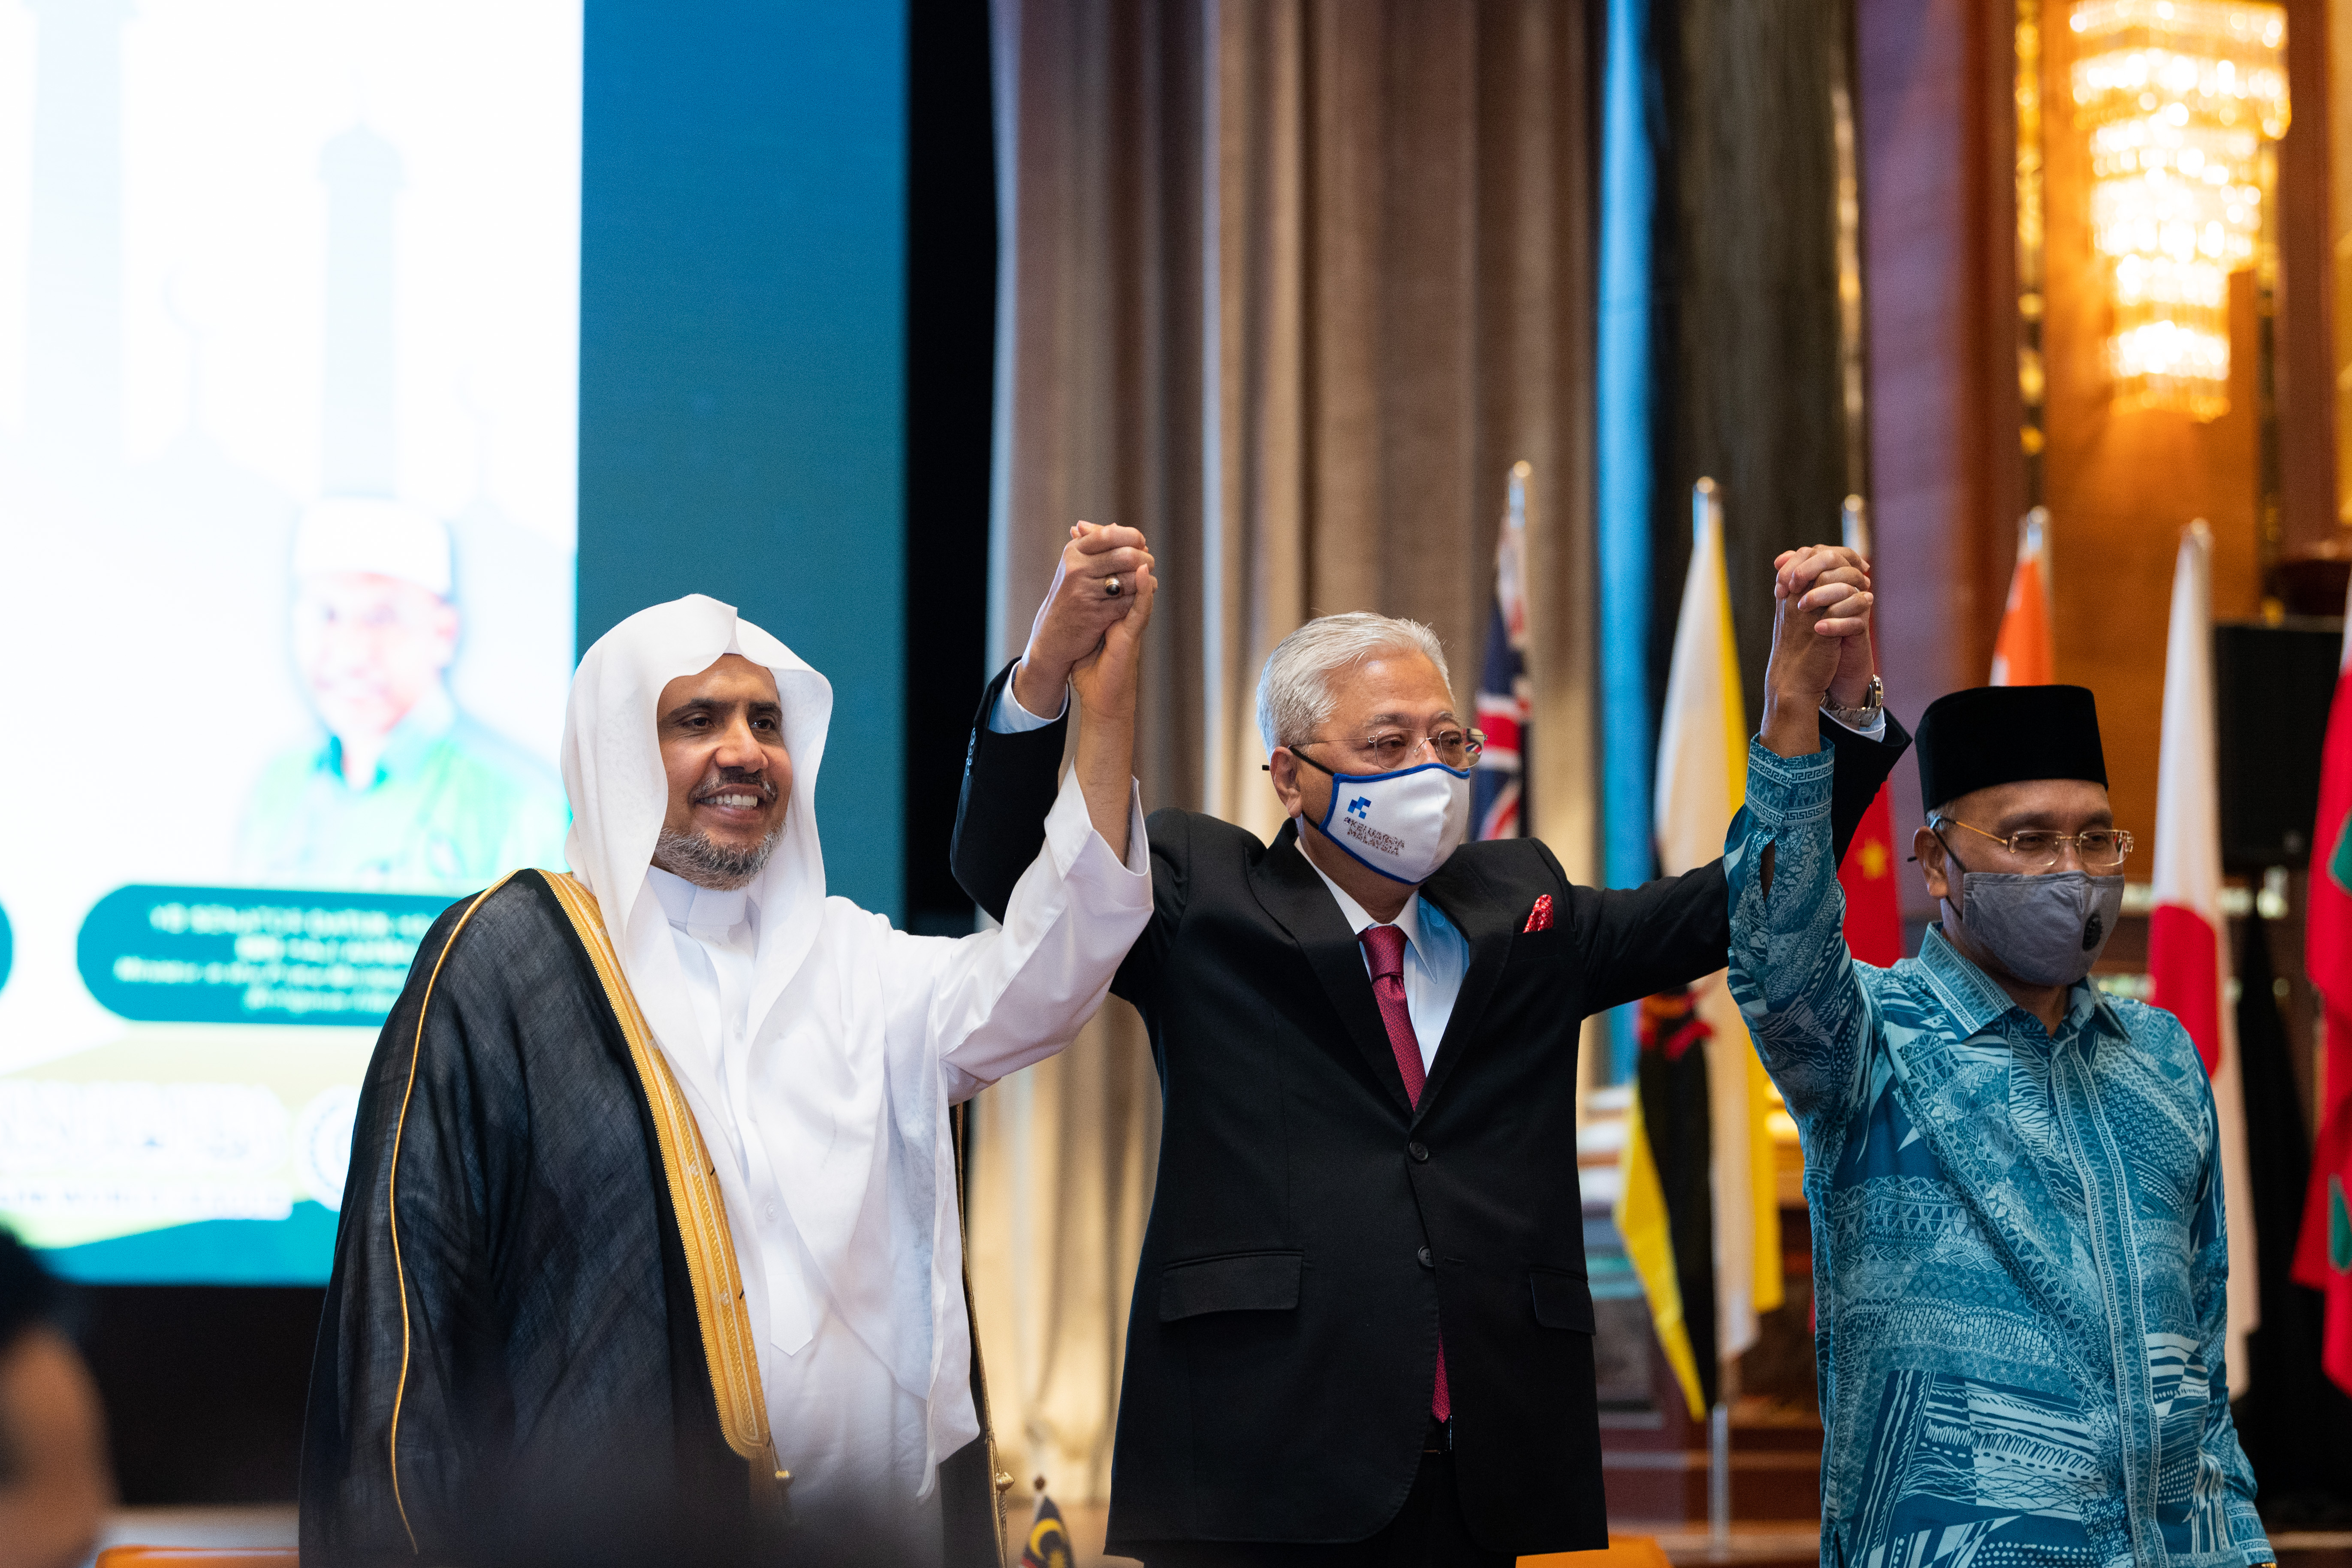 دولة رئيس الوزراء الماليزي متوسطاً معالي الدكتور العيسى ووزير الشؤون الدينية الماليزي